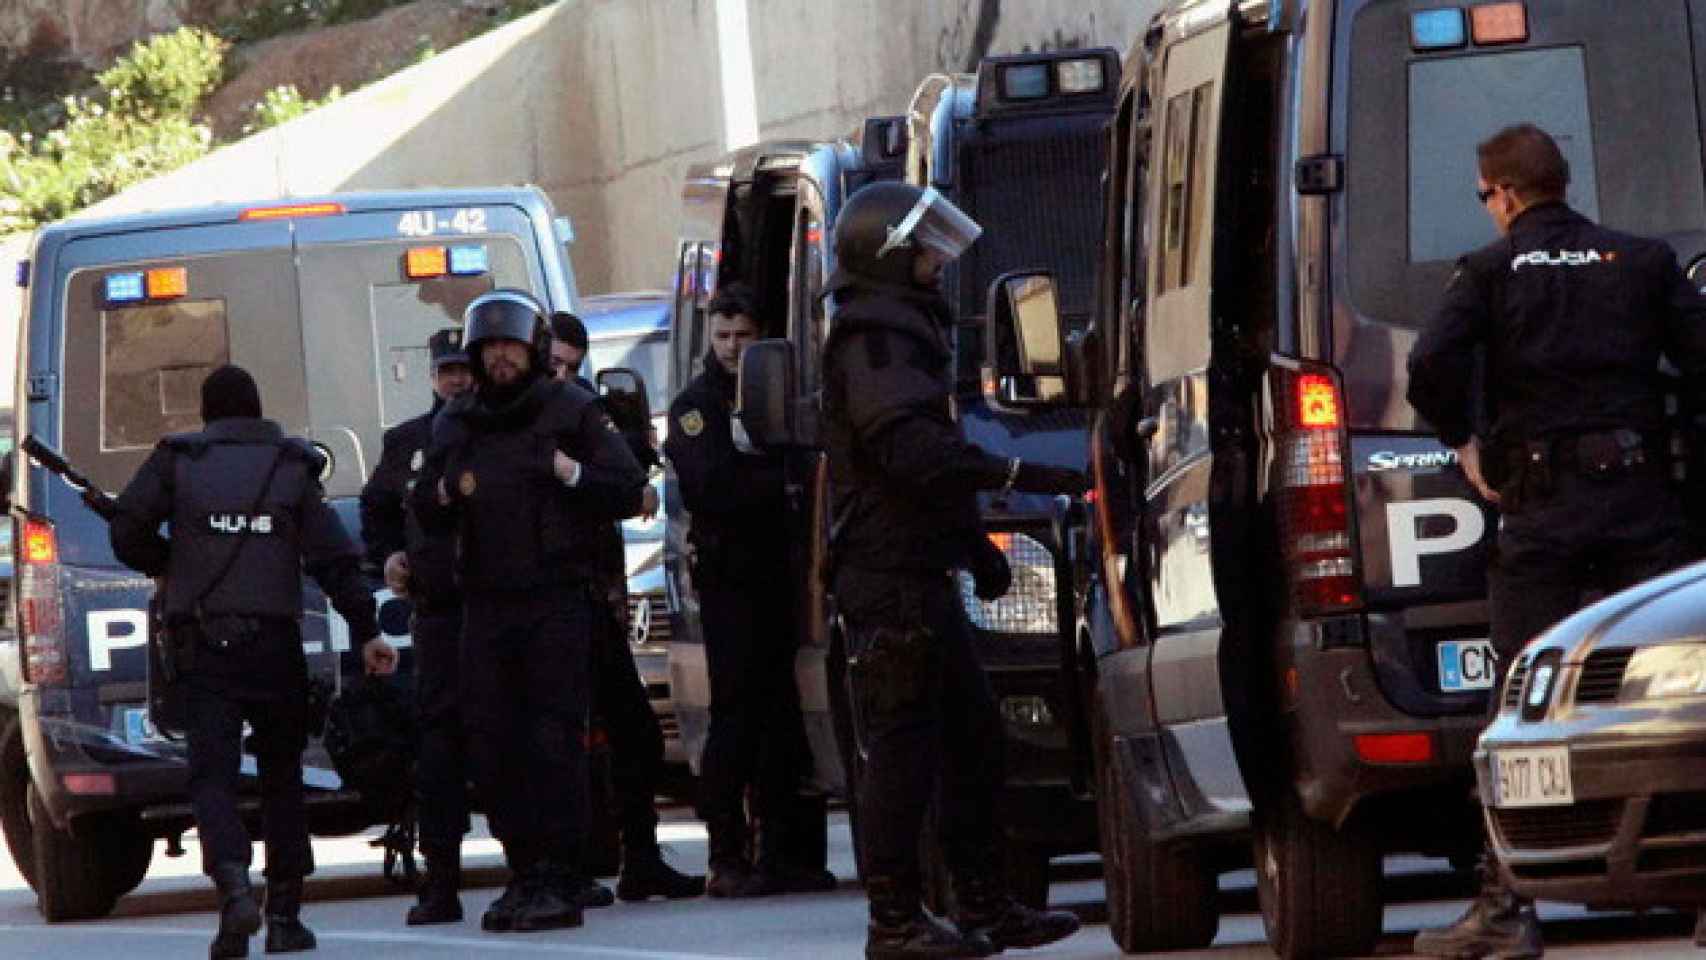 La Policía Nacional en una operación antidroga en Barcelona, en una imagen de archivo / CG